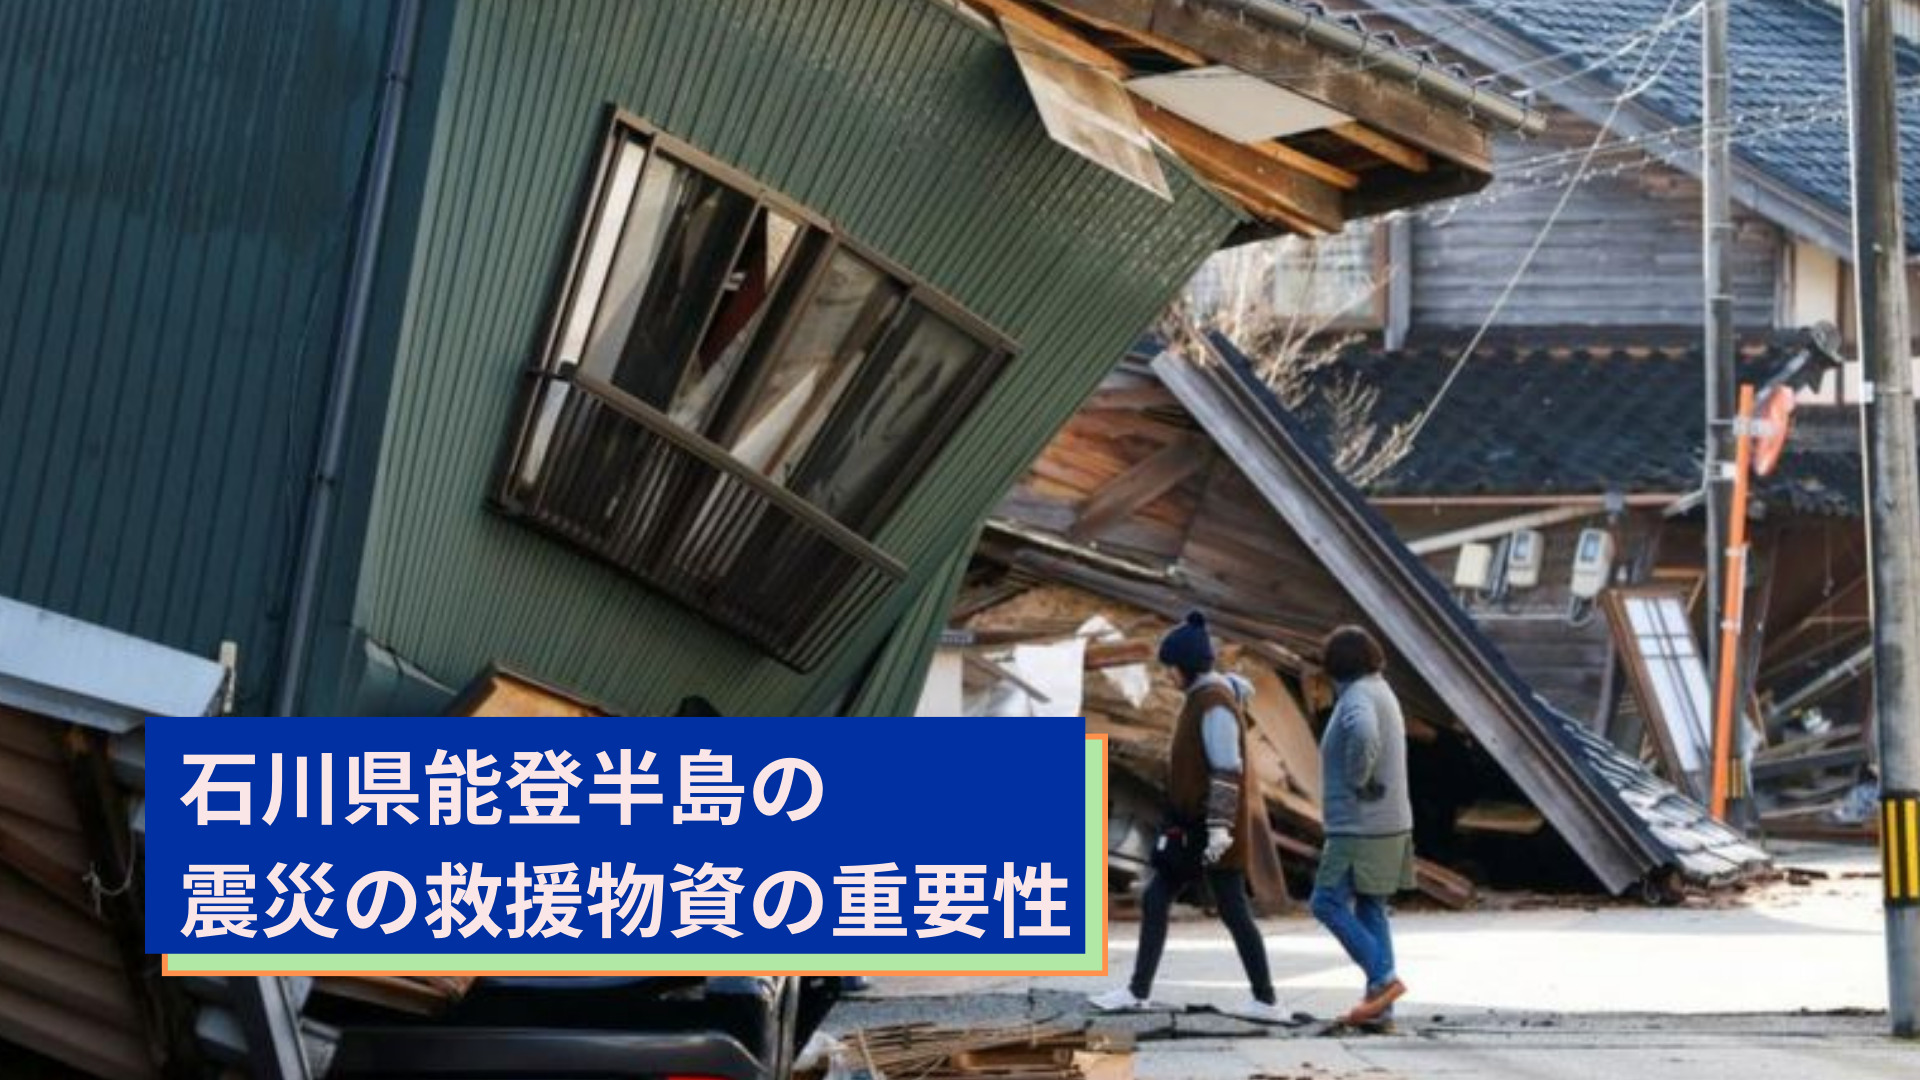 石川県能登半島の震災の救援物資の重要性